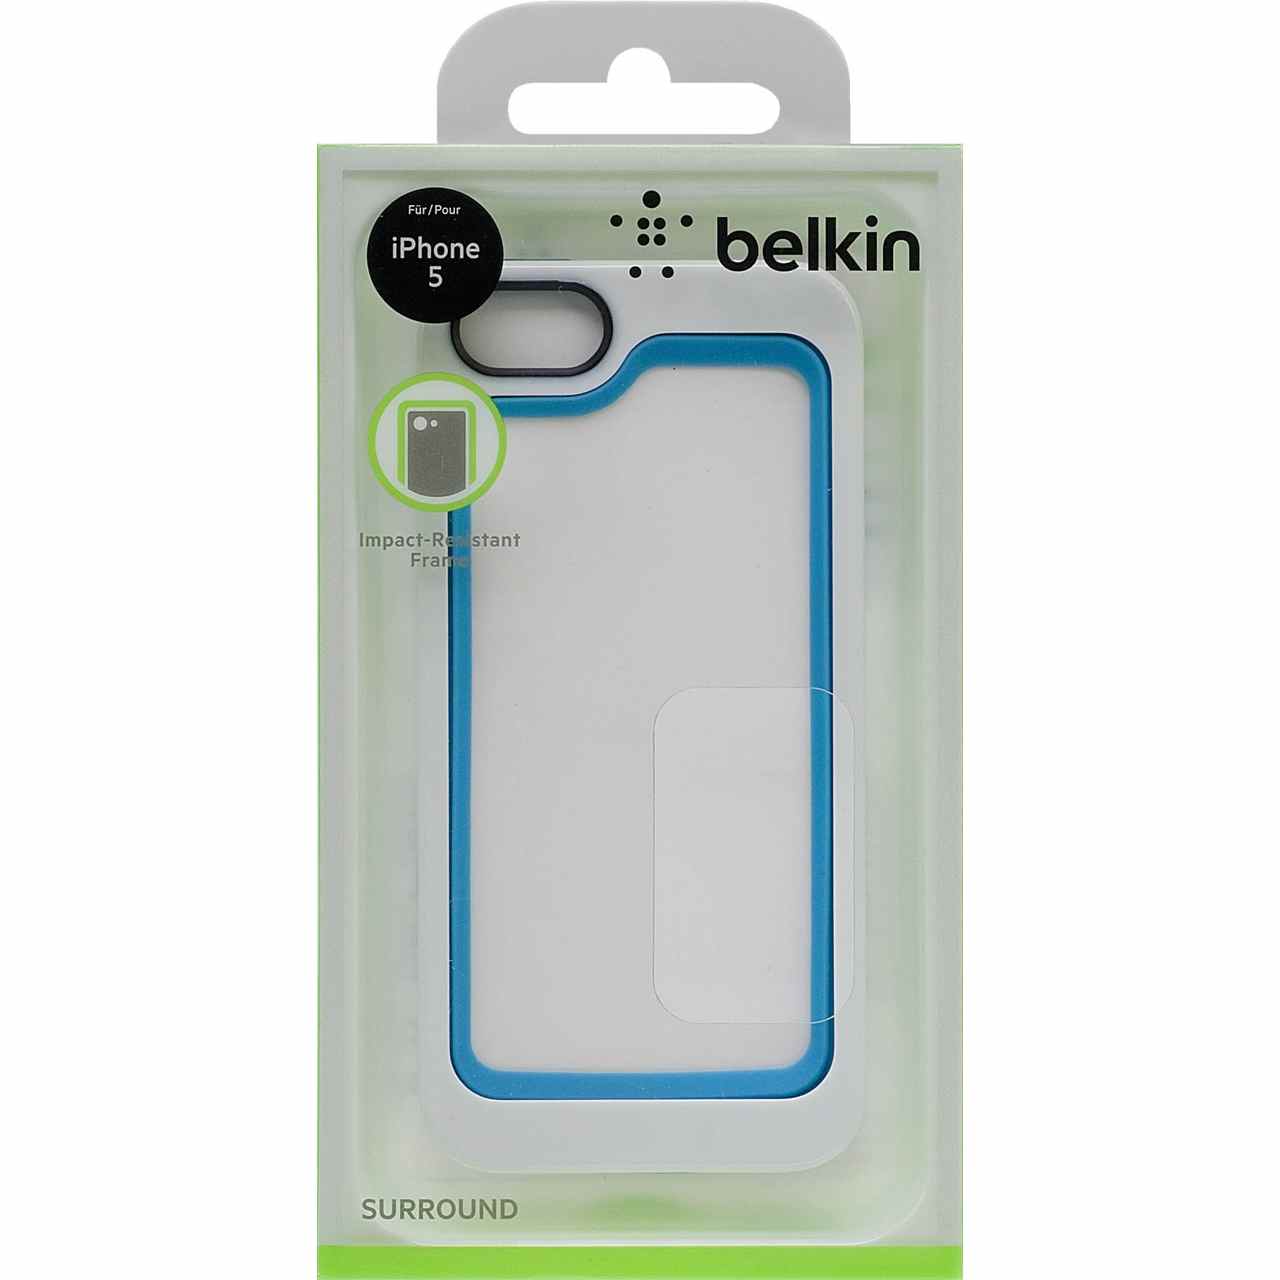 Belkin F8w217vfc01 Surround Case